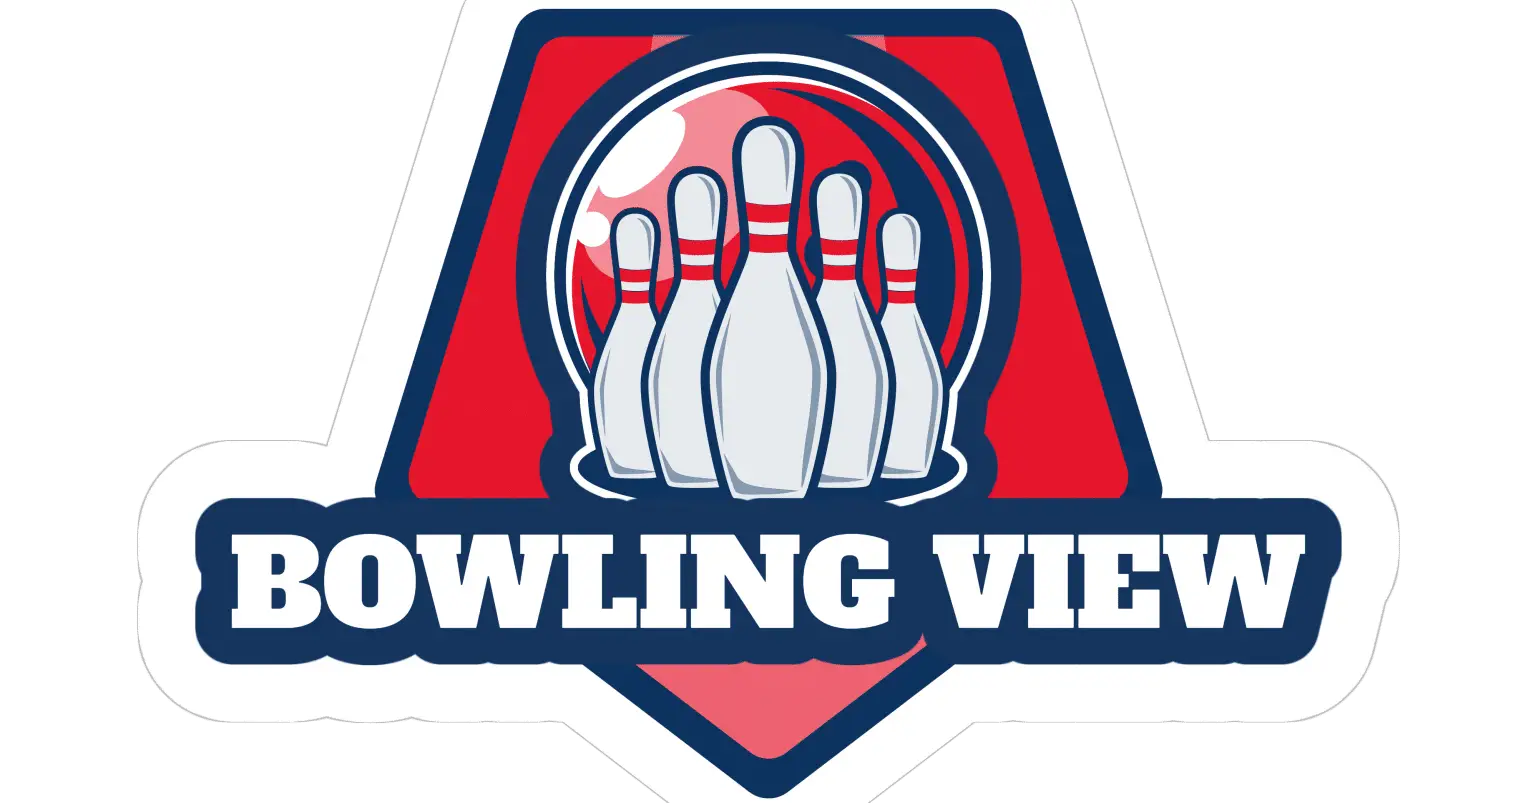 Symmetrical Vs Asymmetrical Bowling Balls - Bowlingview